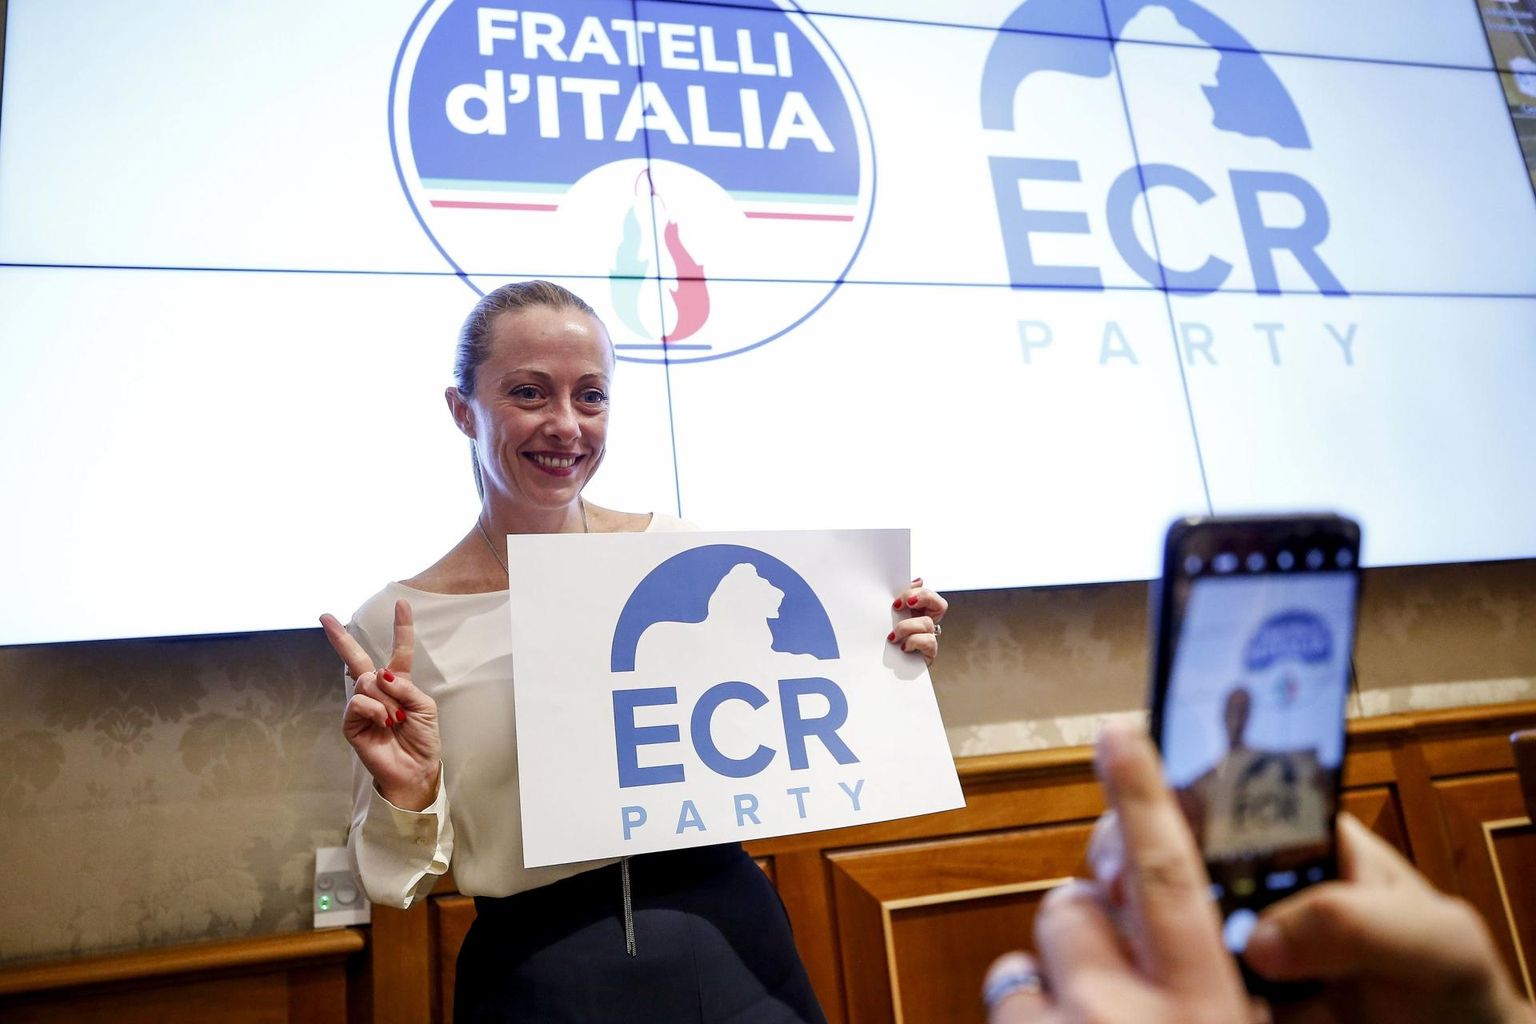 Septembri lõpus valiti Giorgia Meloni parempopulistlikke ja -äärmuslikke jõude koondava Euroopa Konservatiivide ja Reformistide parteigrupi presidendiks.